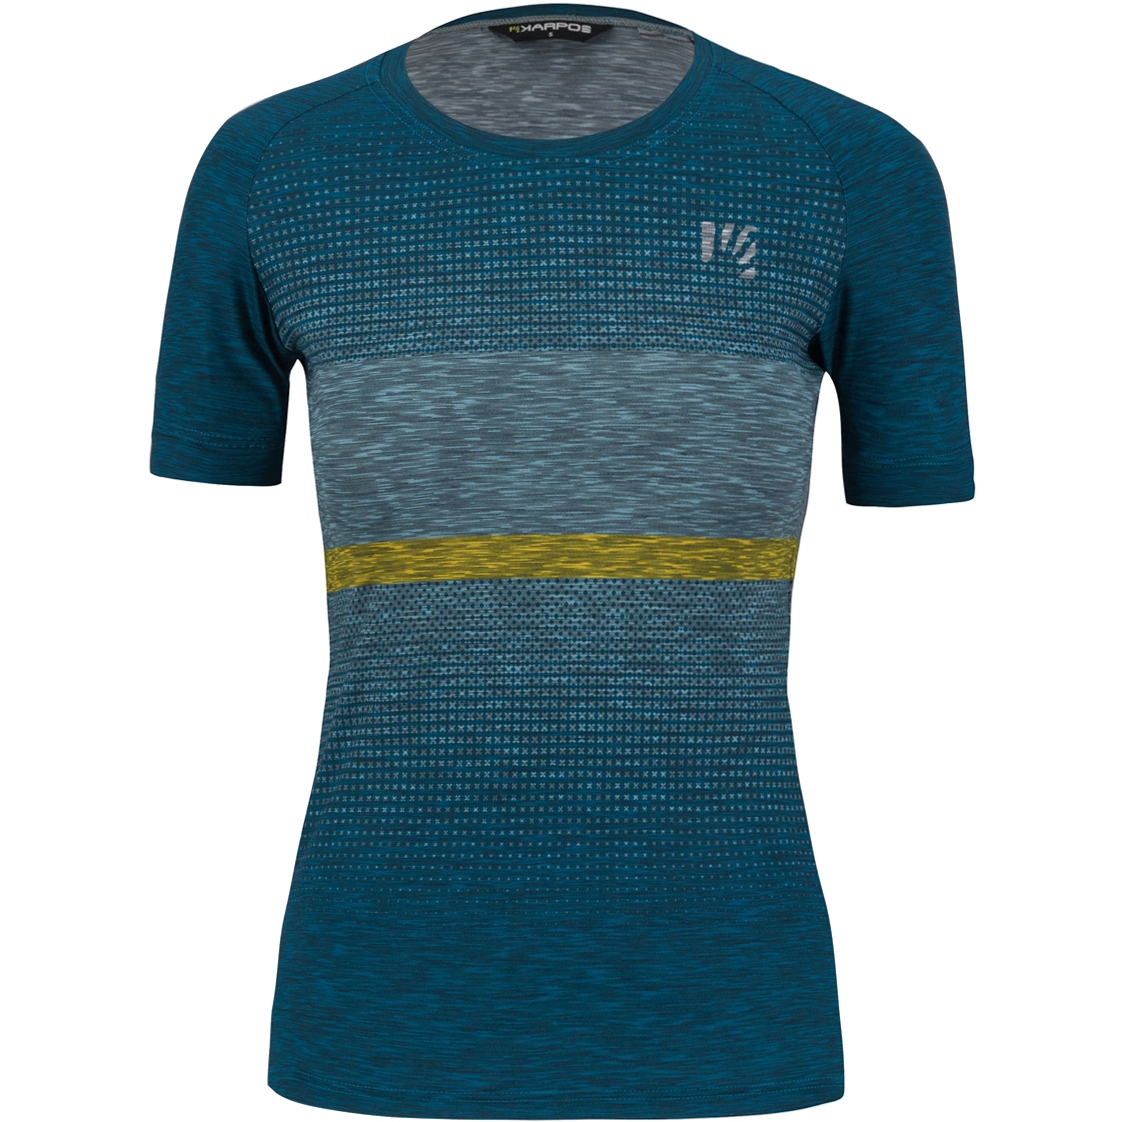 Produktbild von Karpos Verve Damen T-Shirt - corsair/adriatic blue